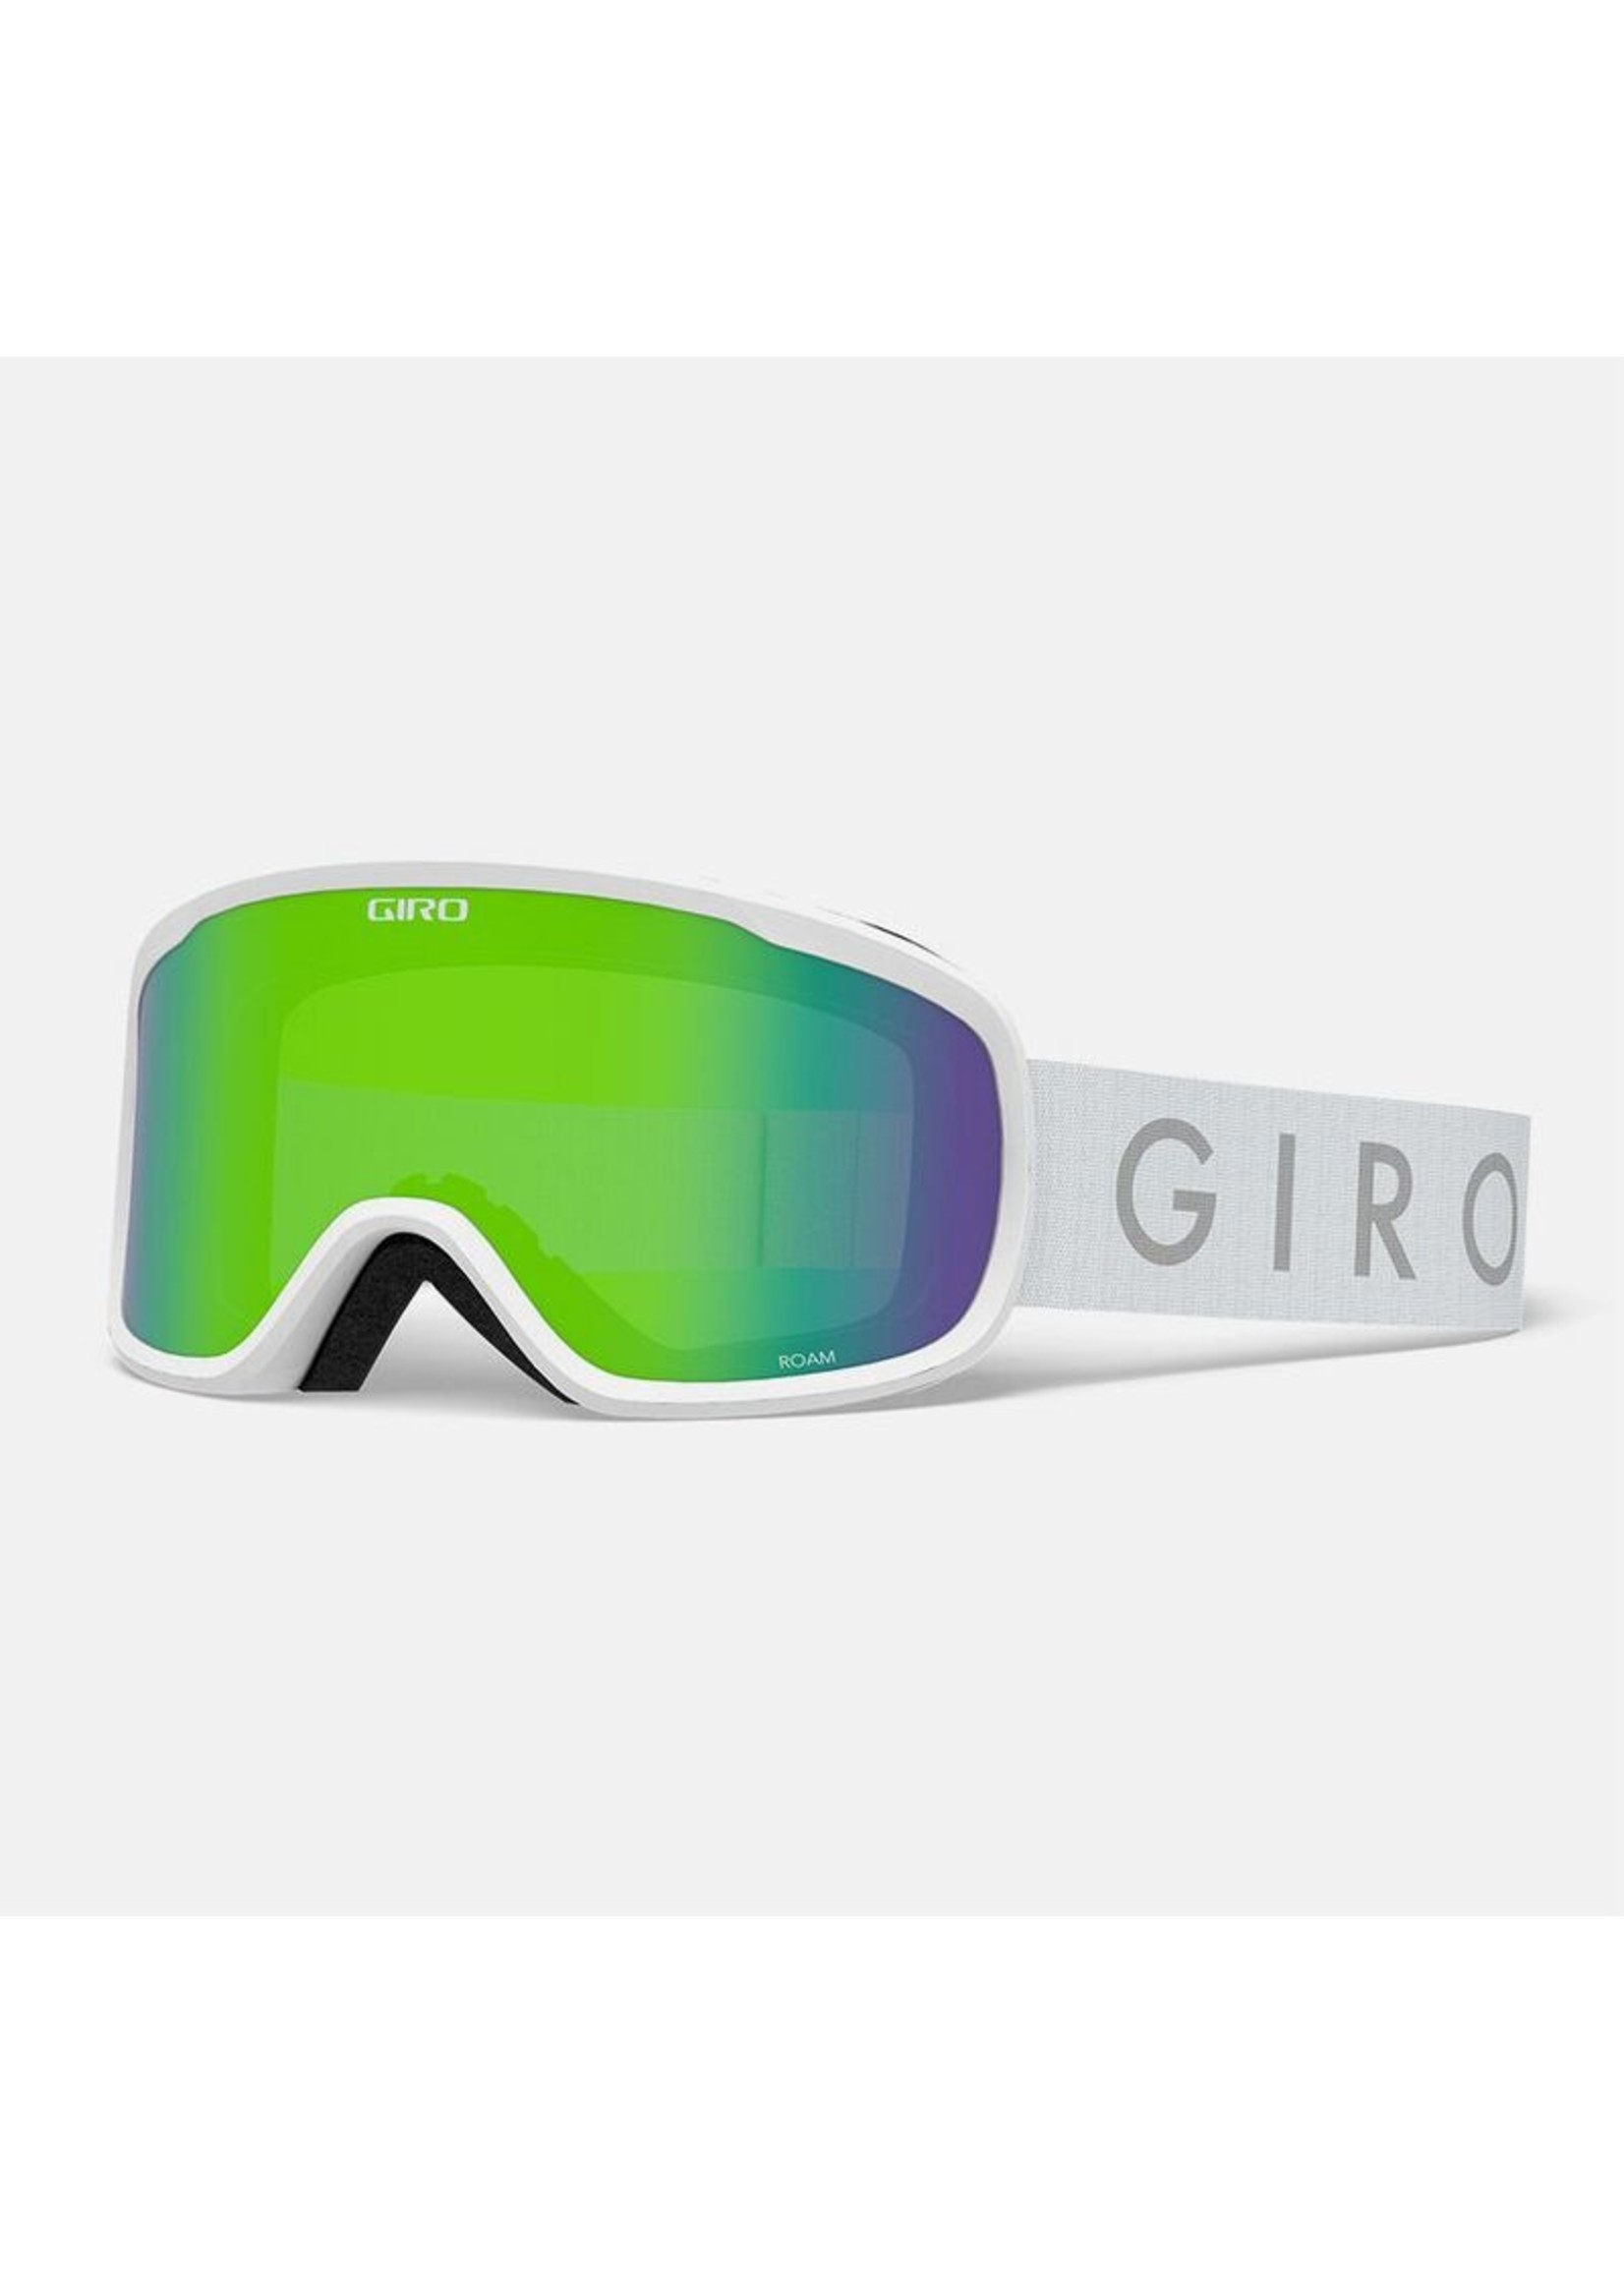 Giro Giro Roam Ski Goggles,